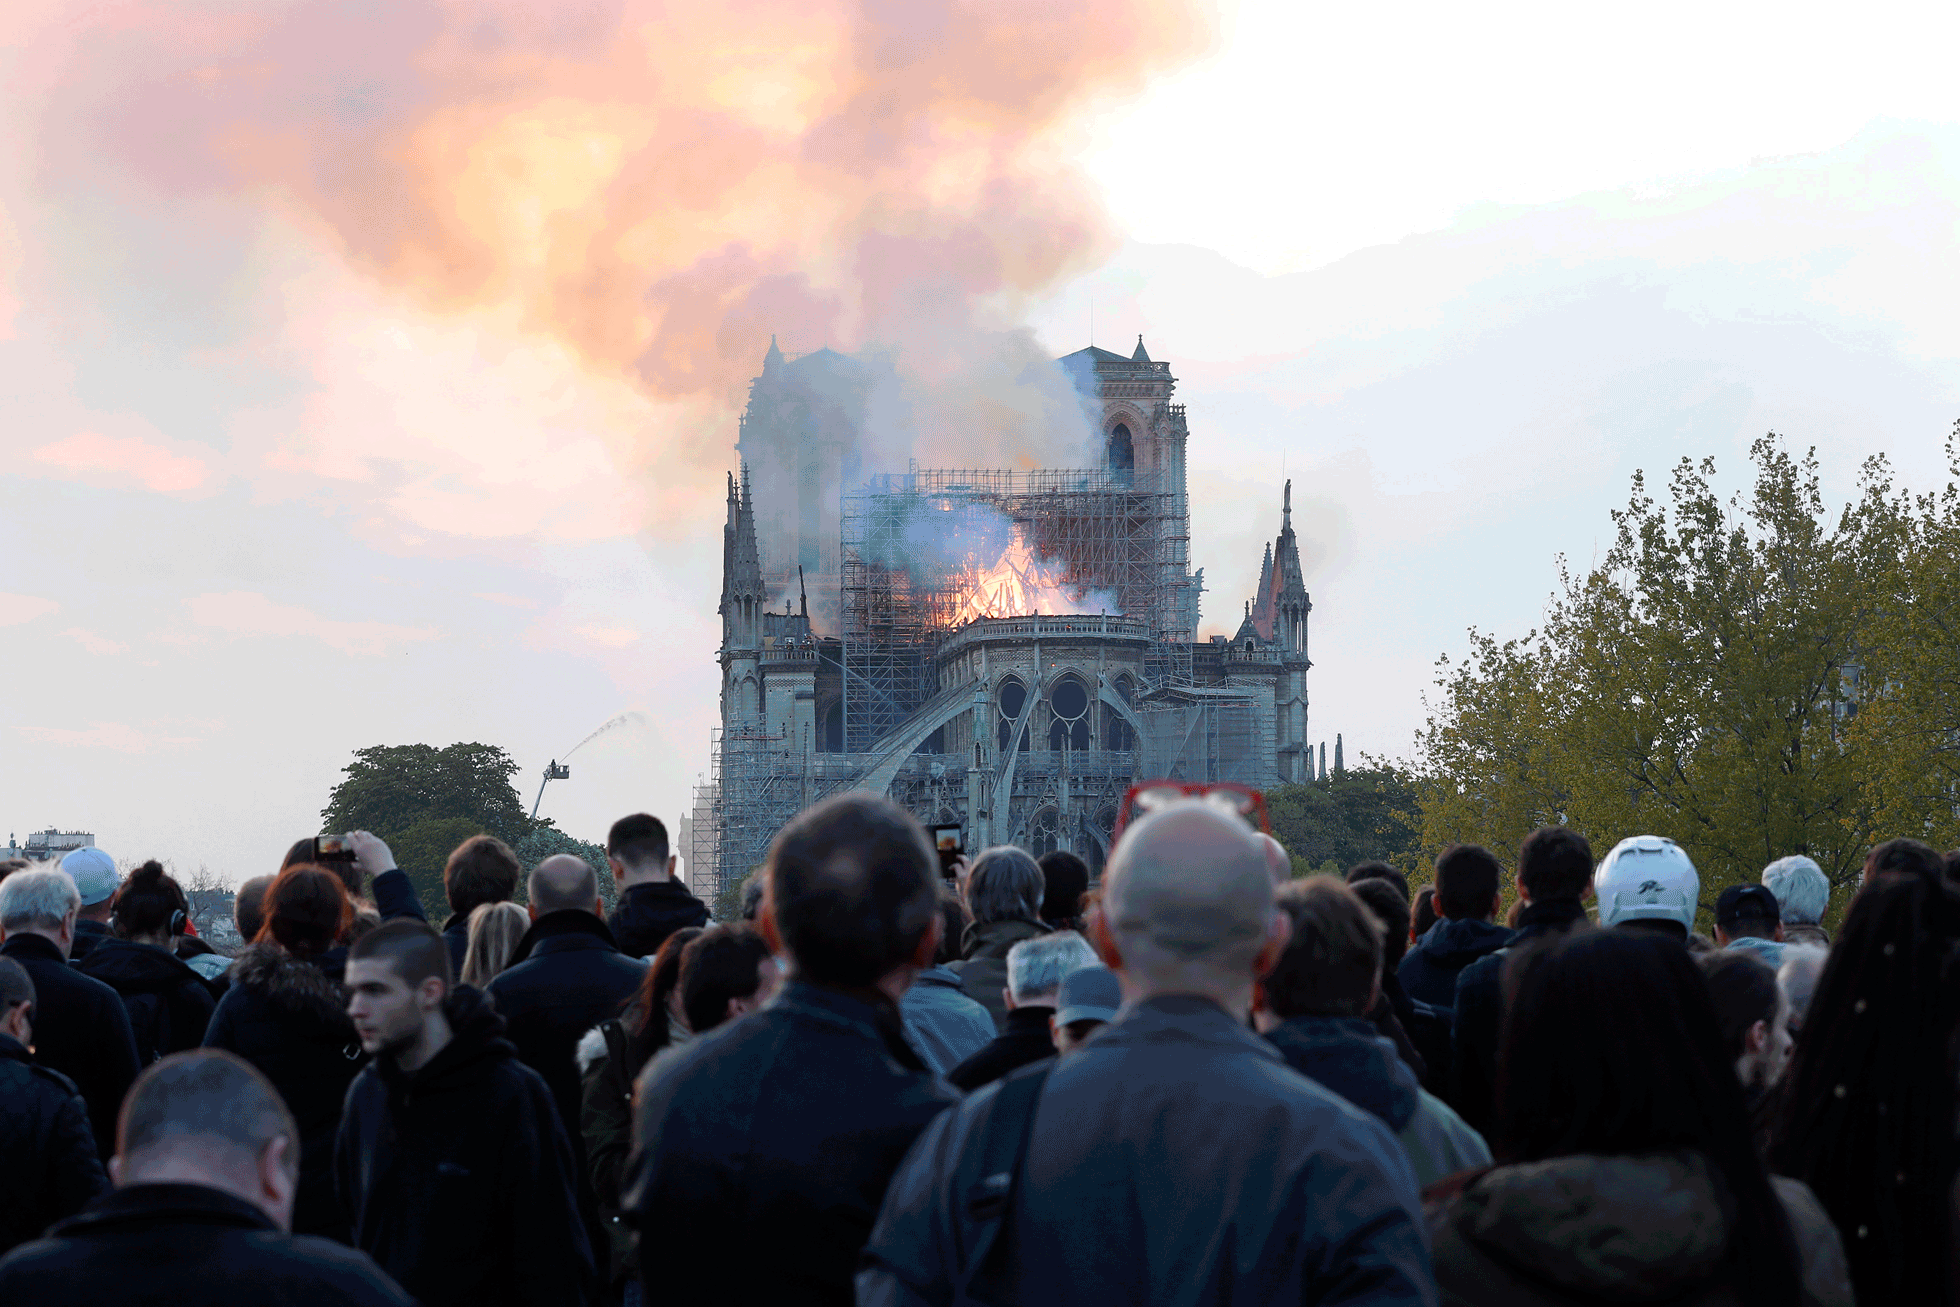 Fotos: El incendio en Notre Dame, en imágenes | Cultura | EL PAÍS